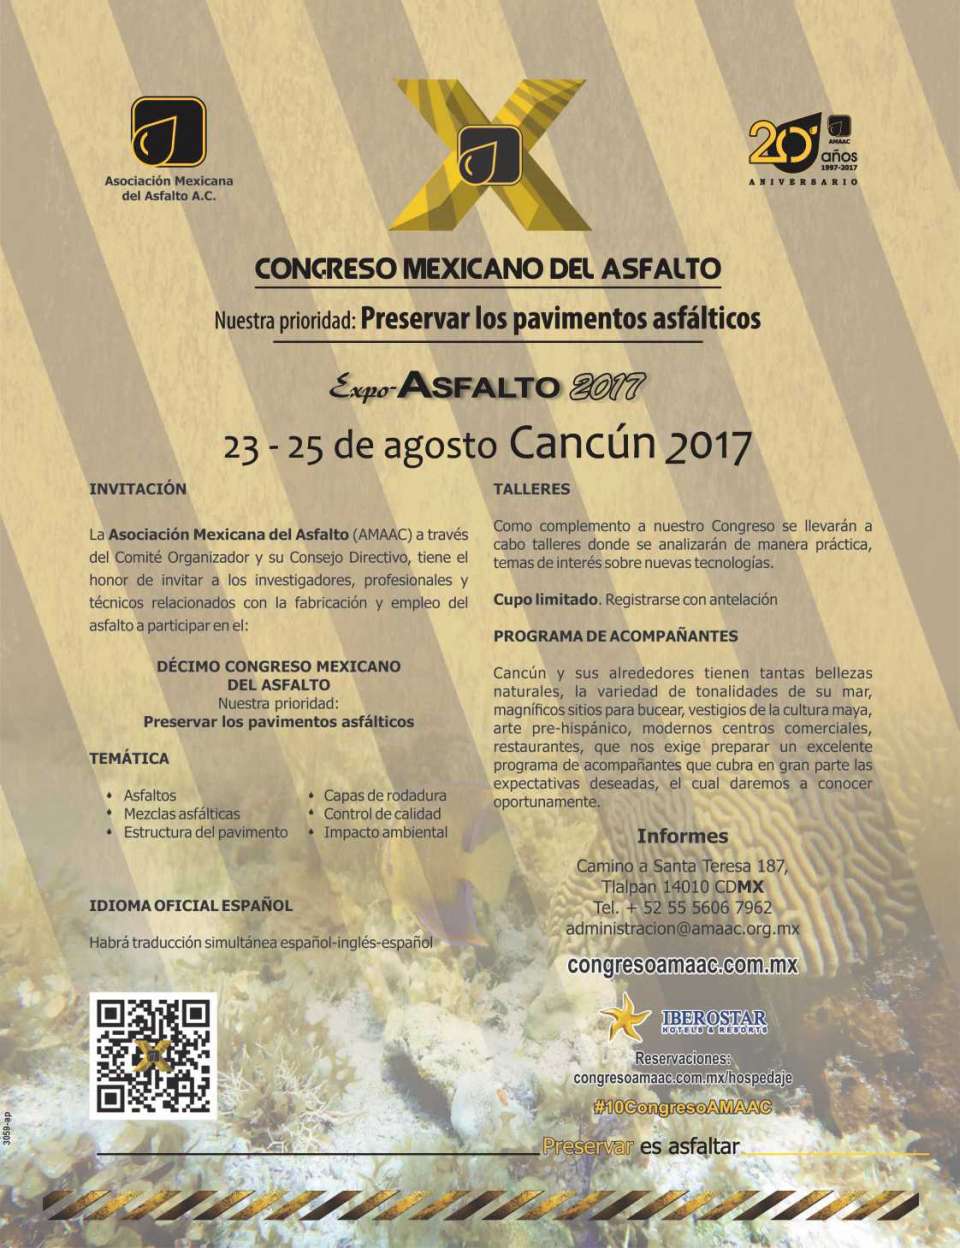 Congreso Mexicano del Asfalto y Expo Asfalto 2017,  del 23 al 25 de Agosto en el Hotel Iberostar Cancun.